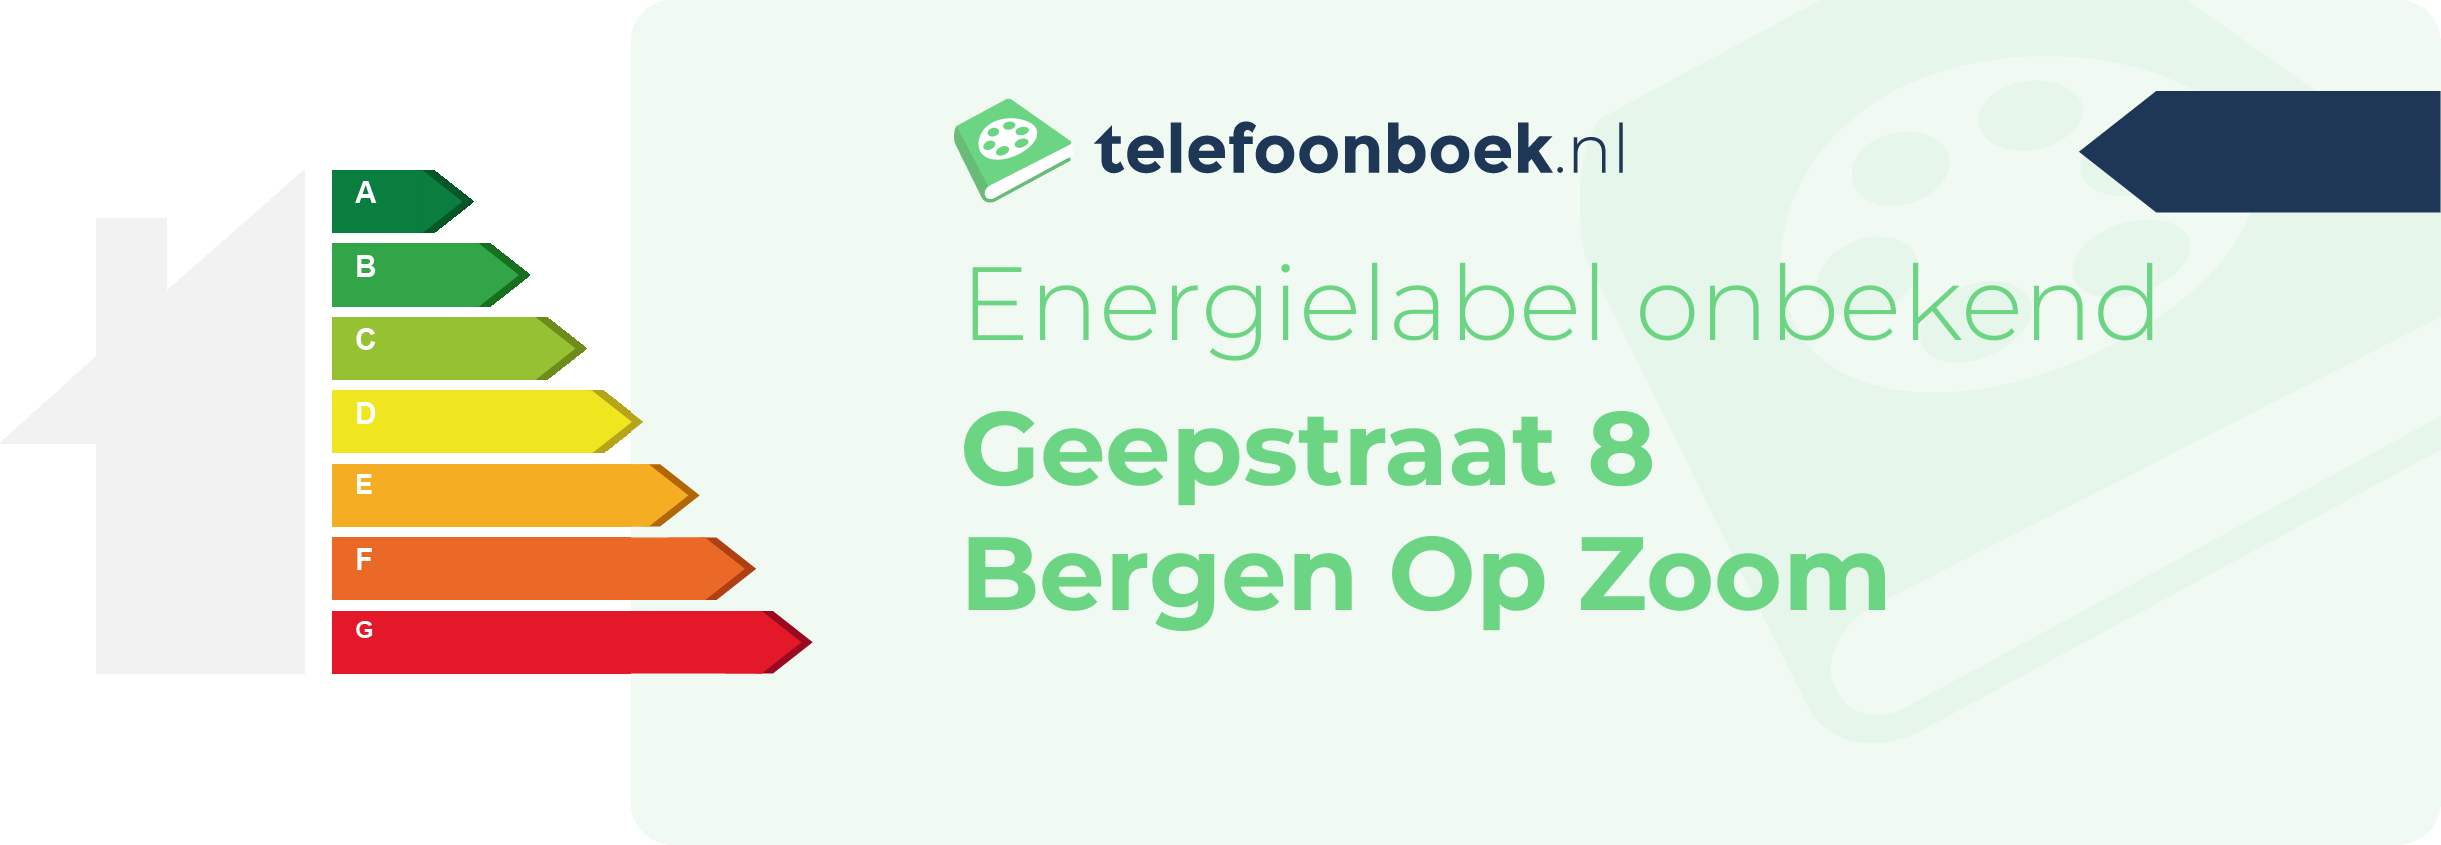 Energielabel Geepstraat 8 Bergen Op Zoom